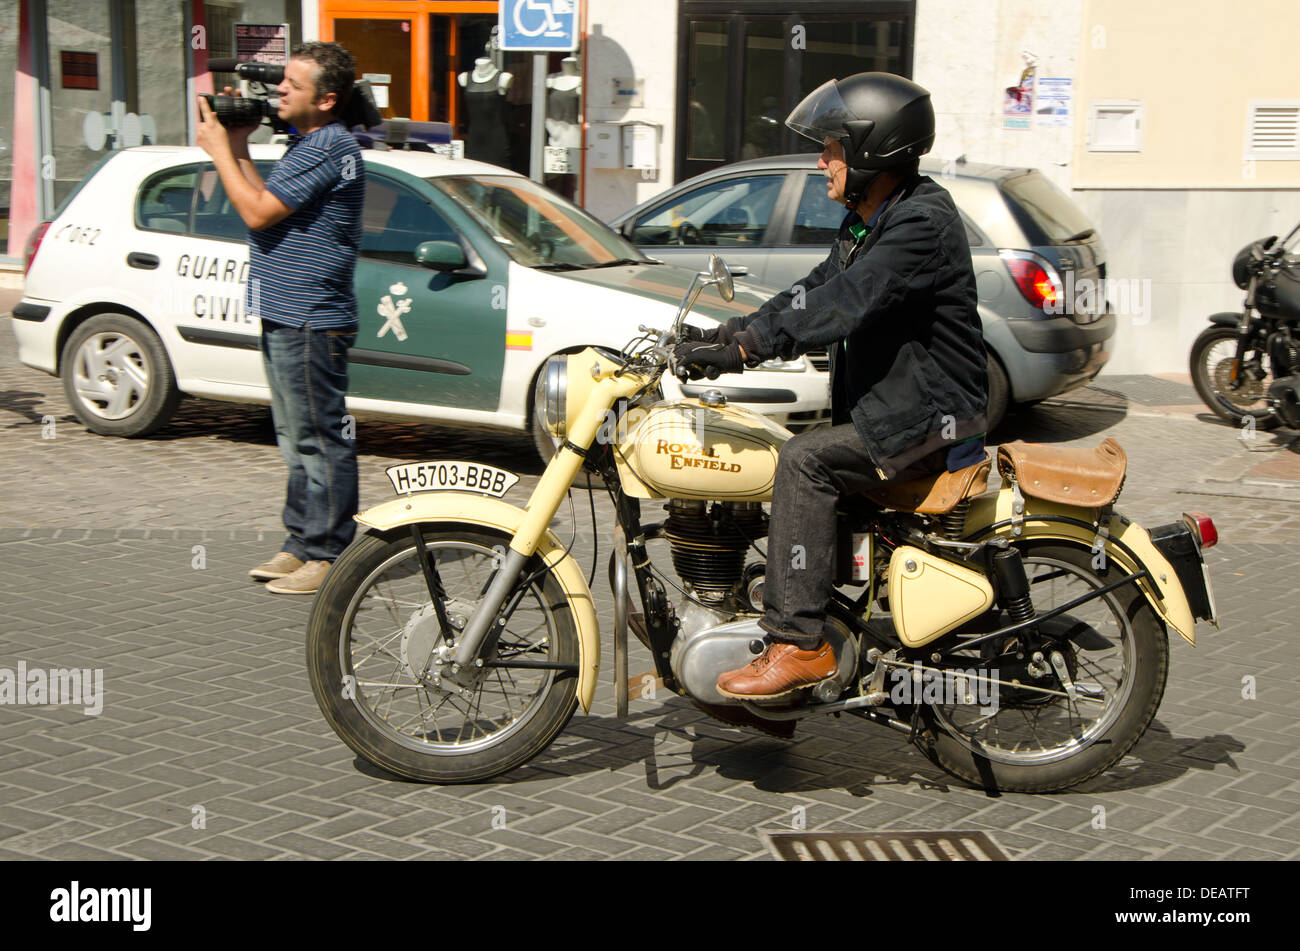 Homme conduisant une Royal Enfield Bullet classic motorcycles lors d'une réunion à moto vintage Coin Andalousie, espagne. Banque D'Images